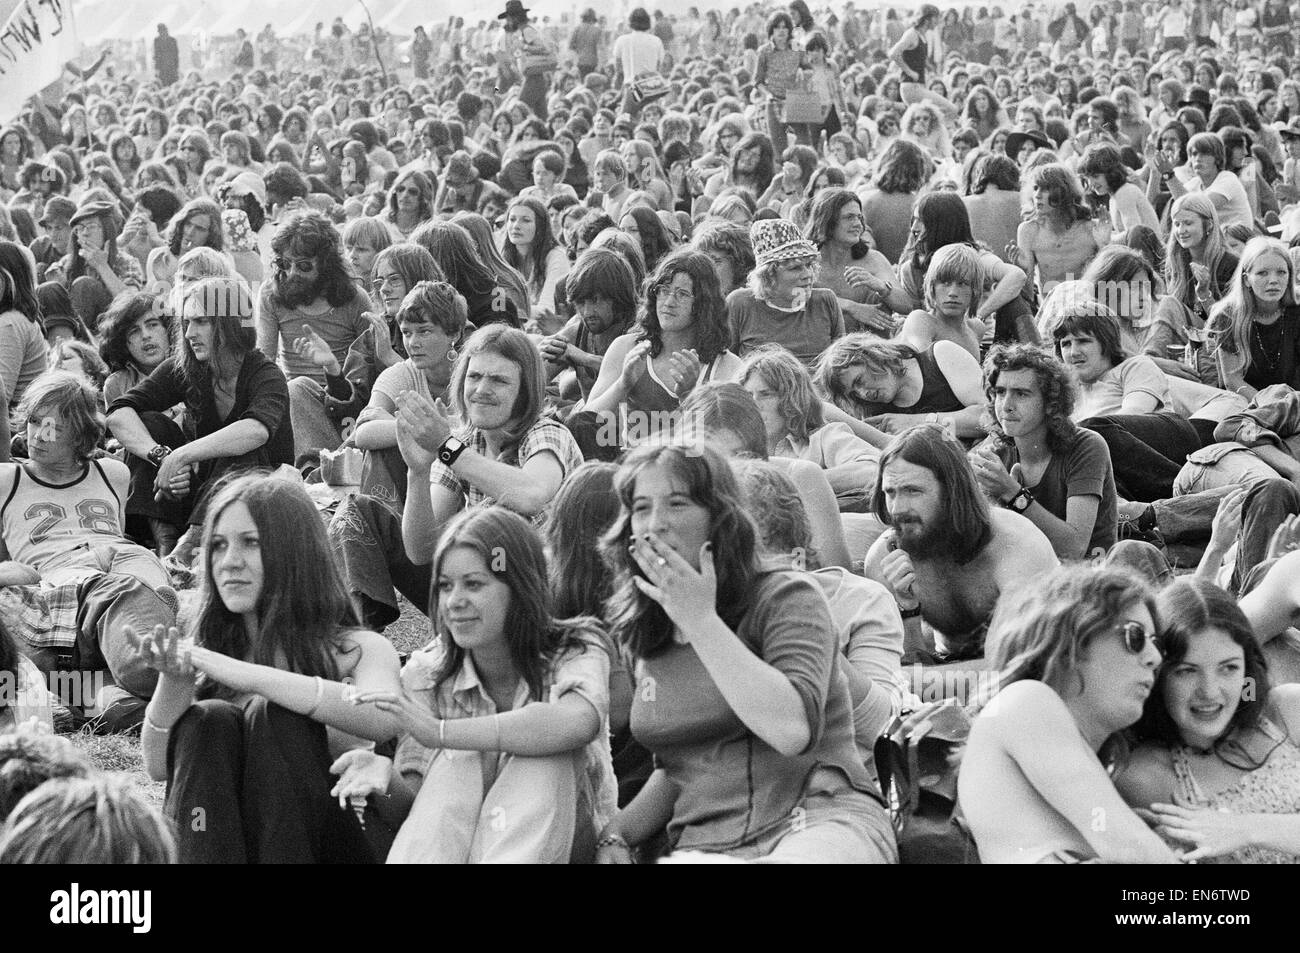 Leer Pop Festival. multitudes esperando por las bandas para tomar el escenario durante el festival. El 24 de agosto de 1973. Foto de stock